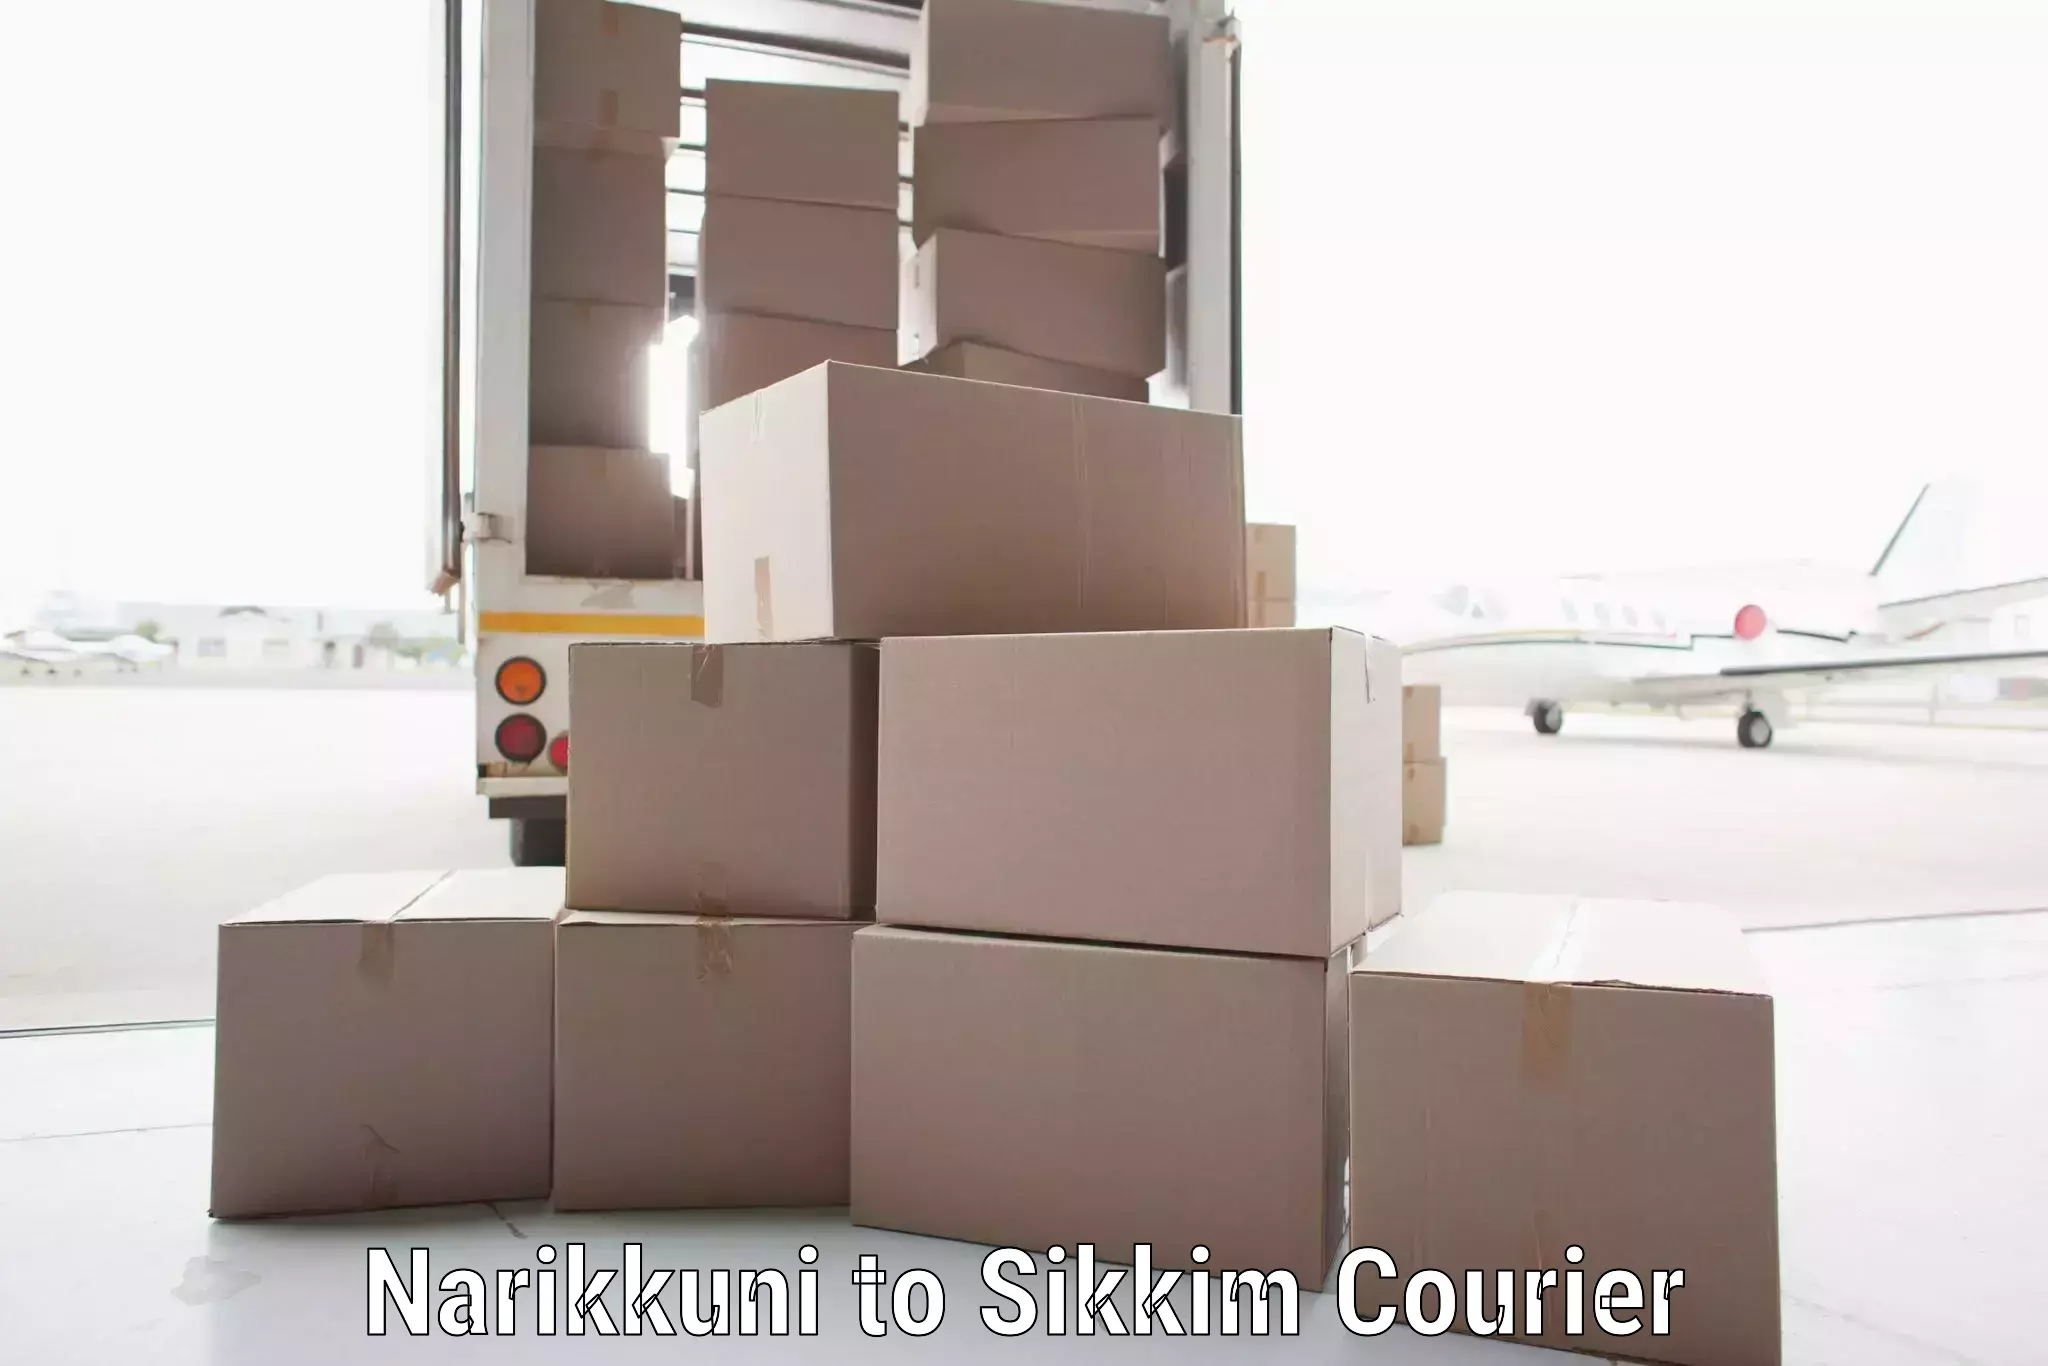 Efficient freight service in Narikkuni to North Sikkim